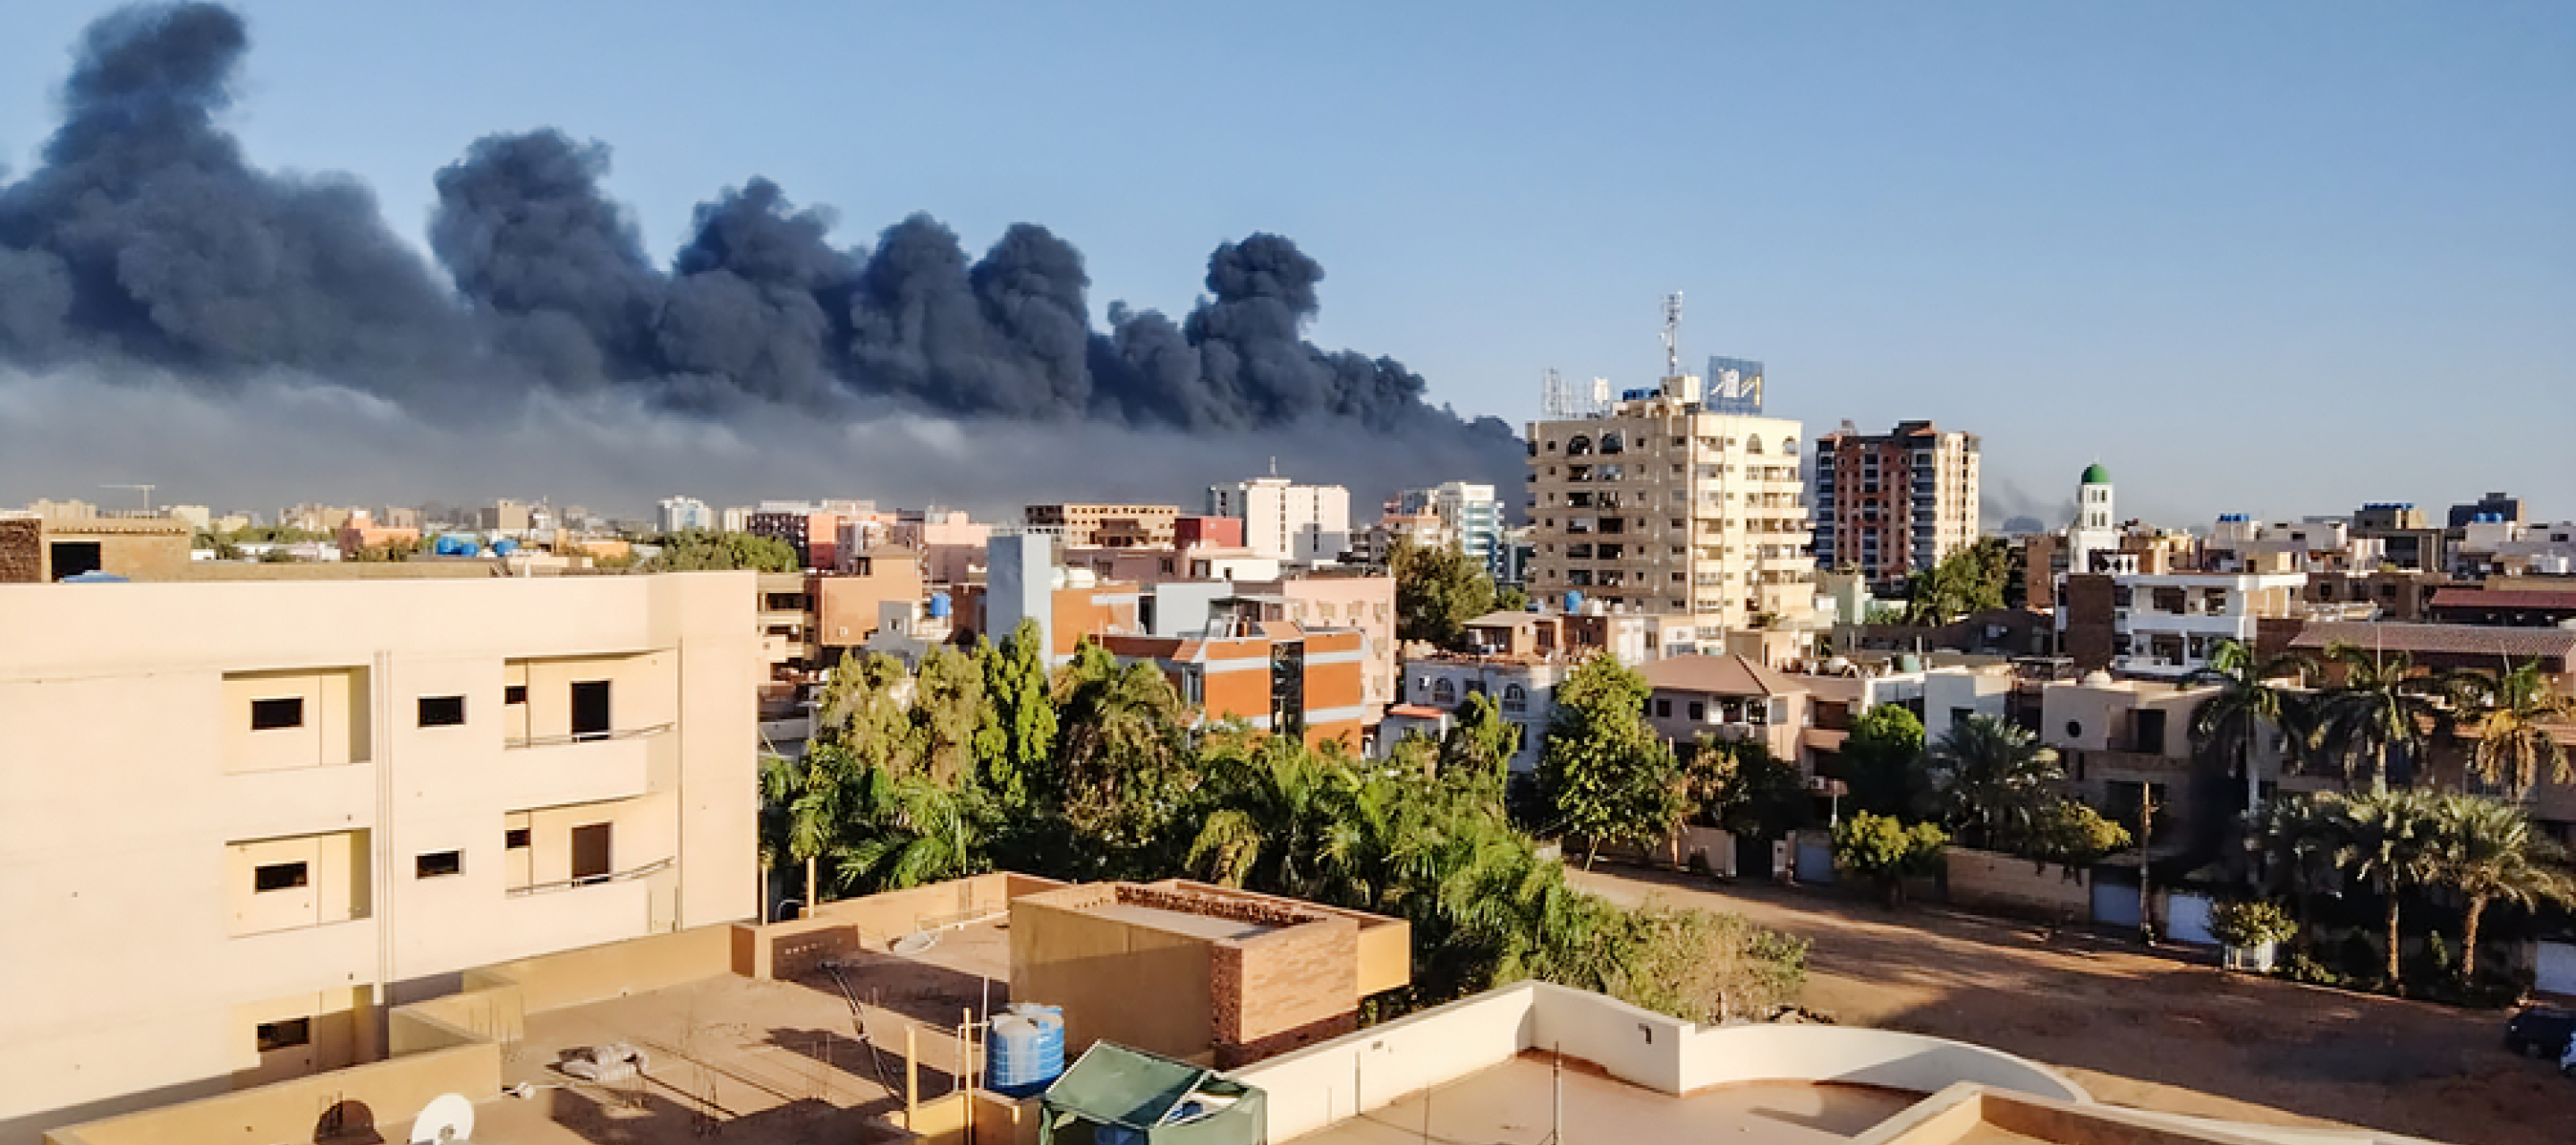 Eine Rauchschwade zieht über die Dächer der Hauptstadt des Sudans.